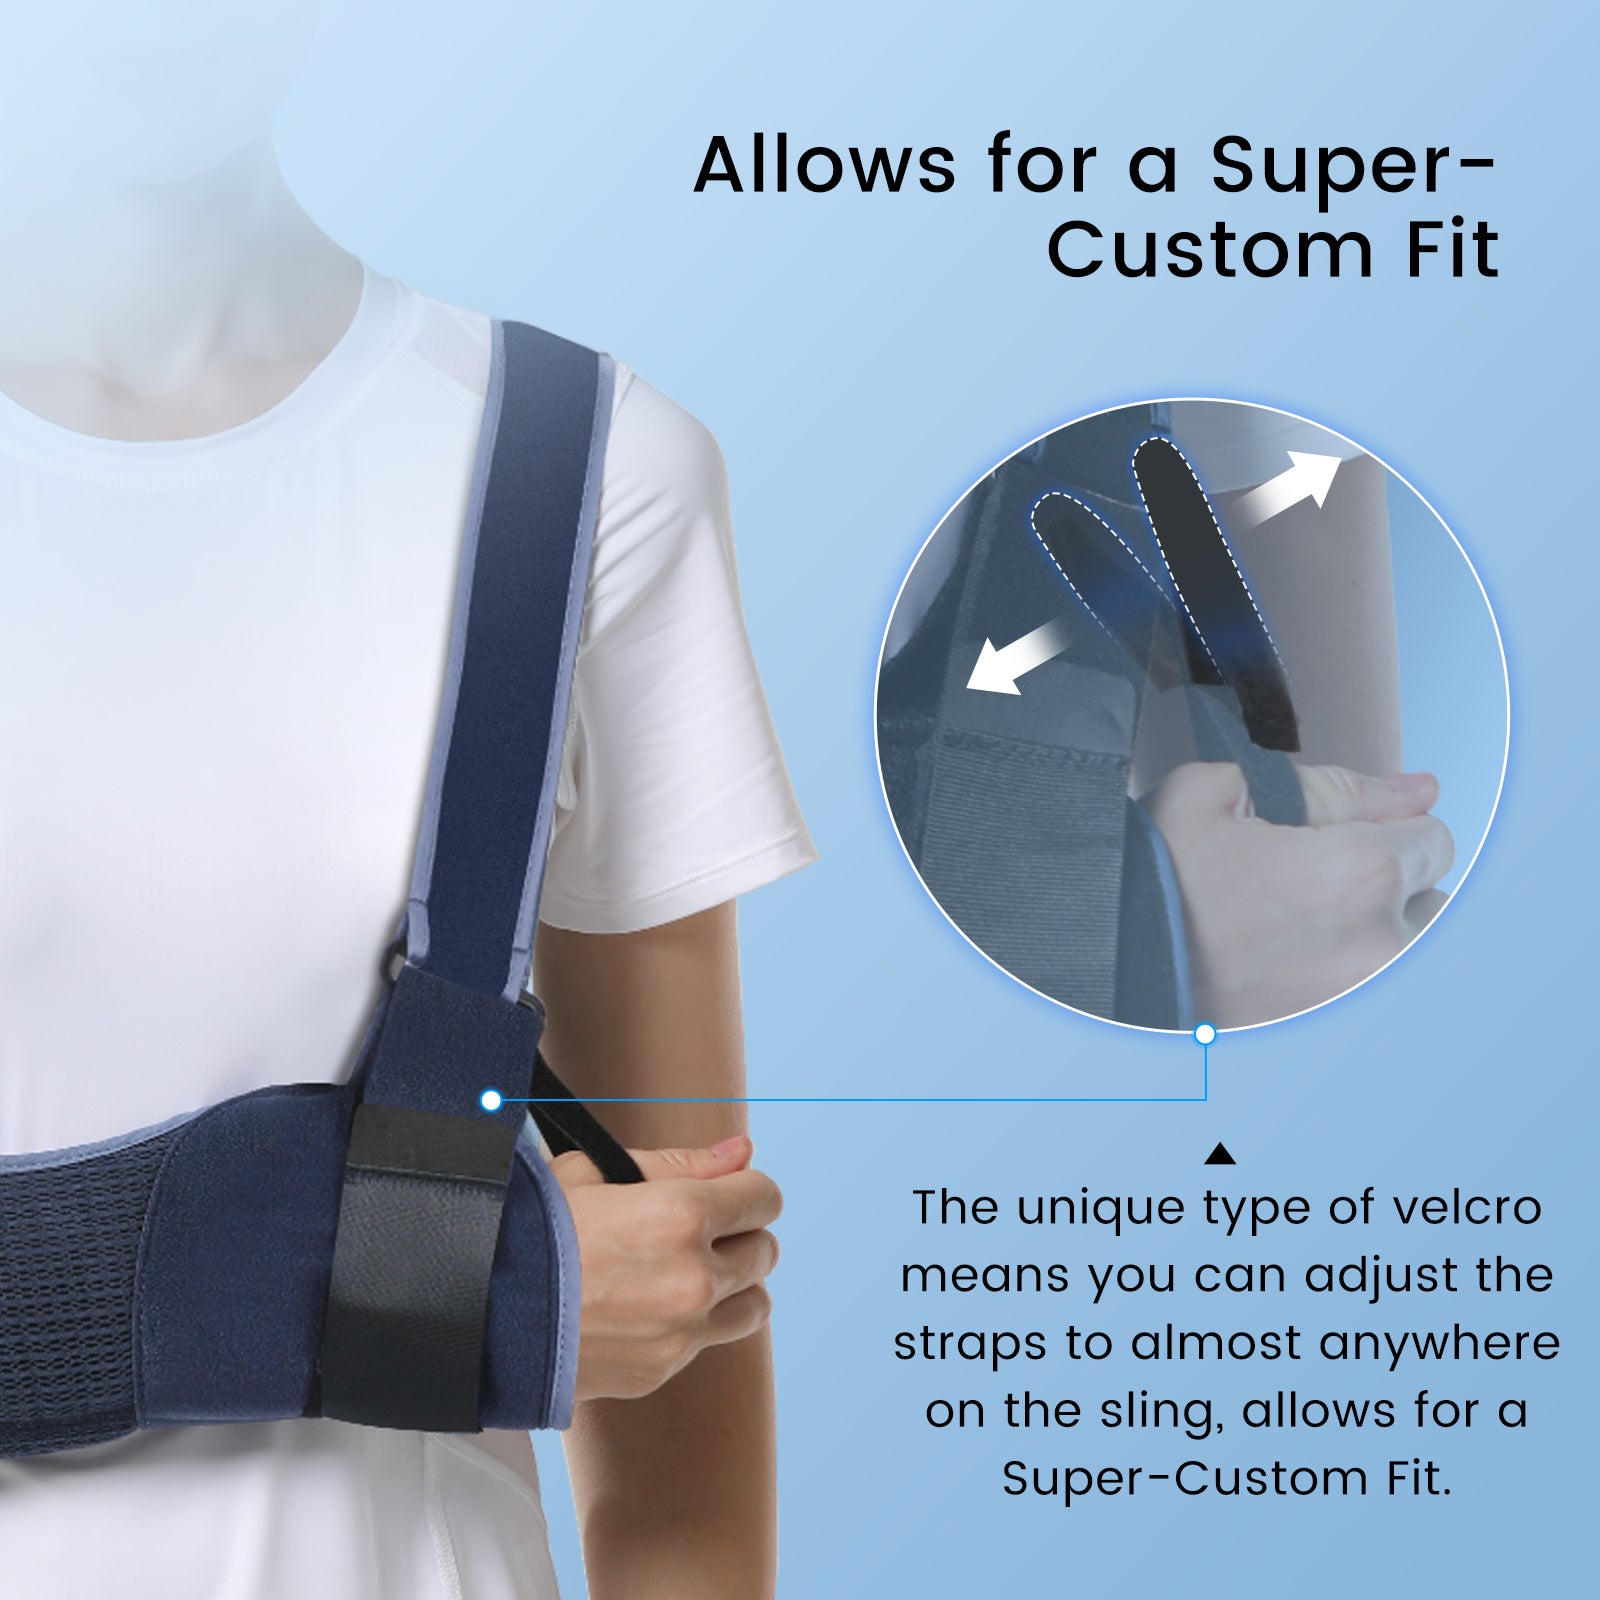 VP0306B VELPEAU Arm Sling Shoulder Immobilizer Breathable